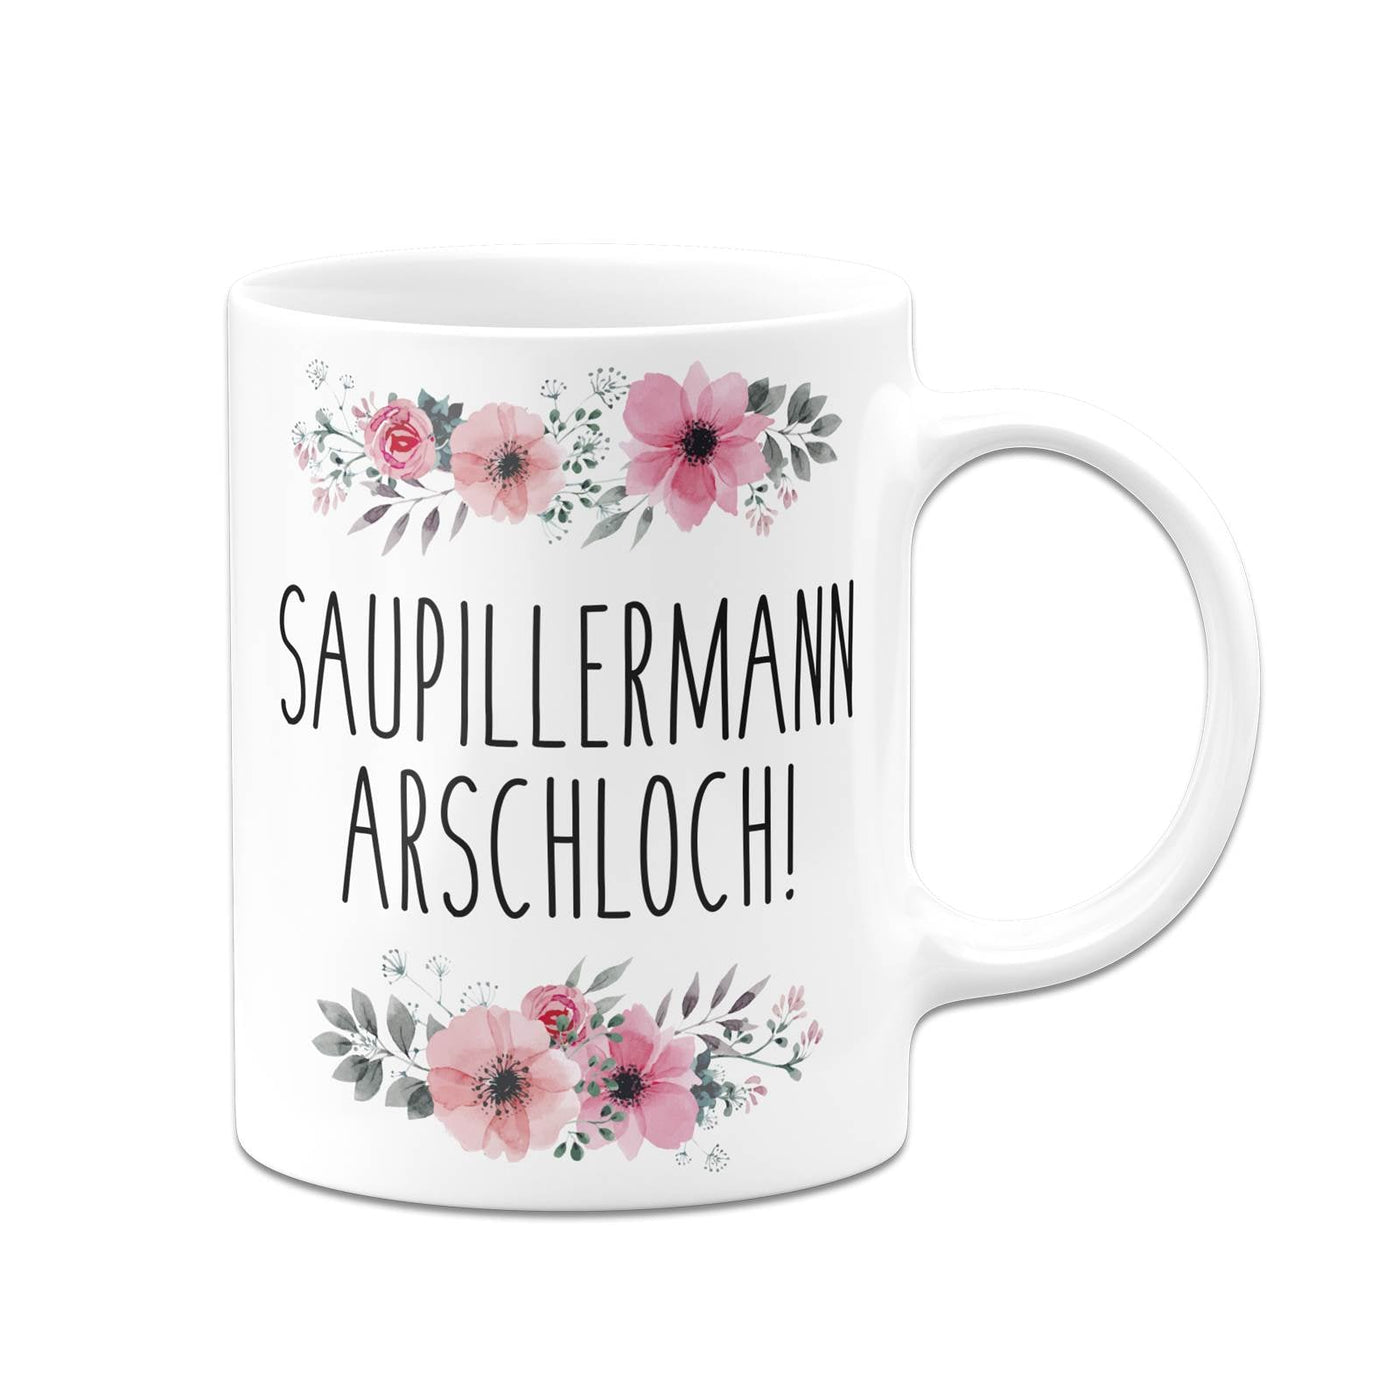 Bild: Tasse - Saupillermann Arschloch!- blumig Geschenkidee